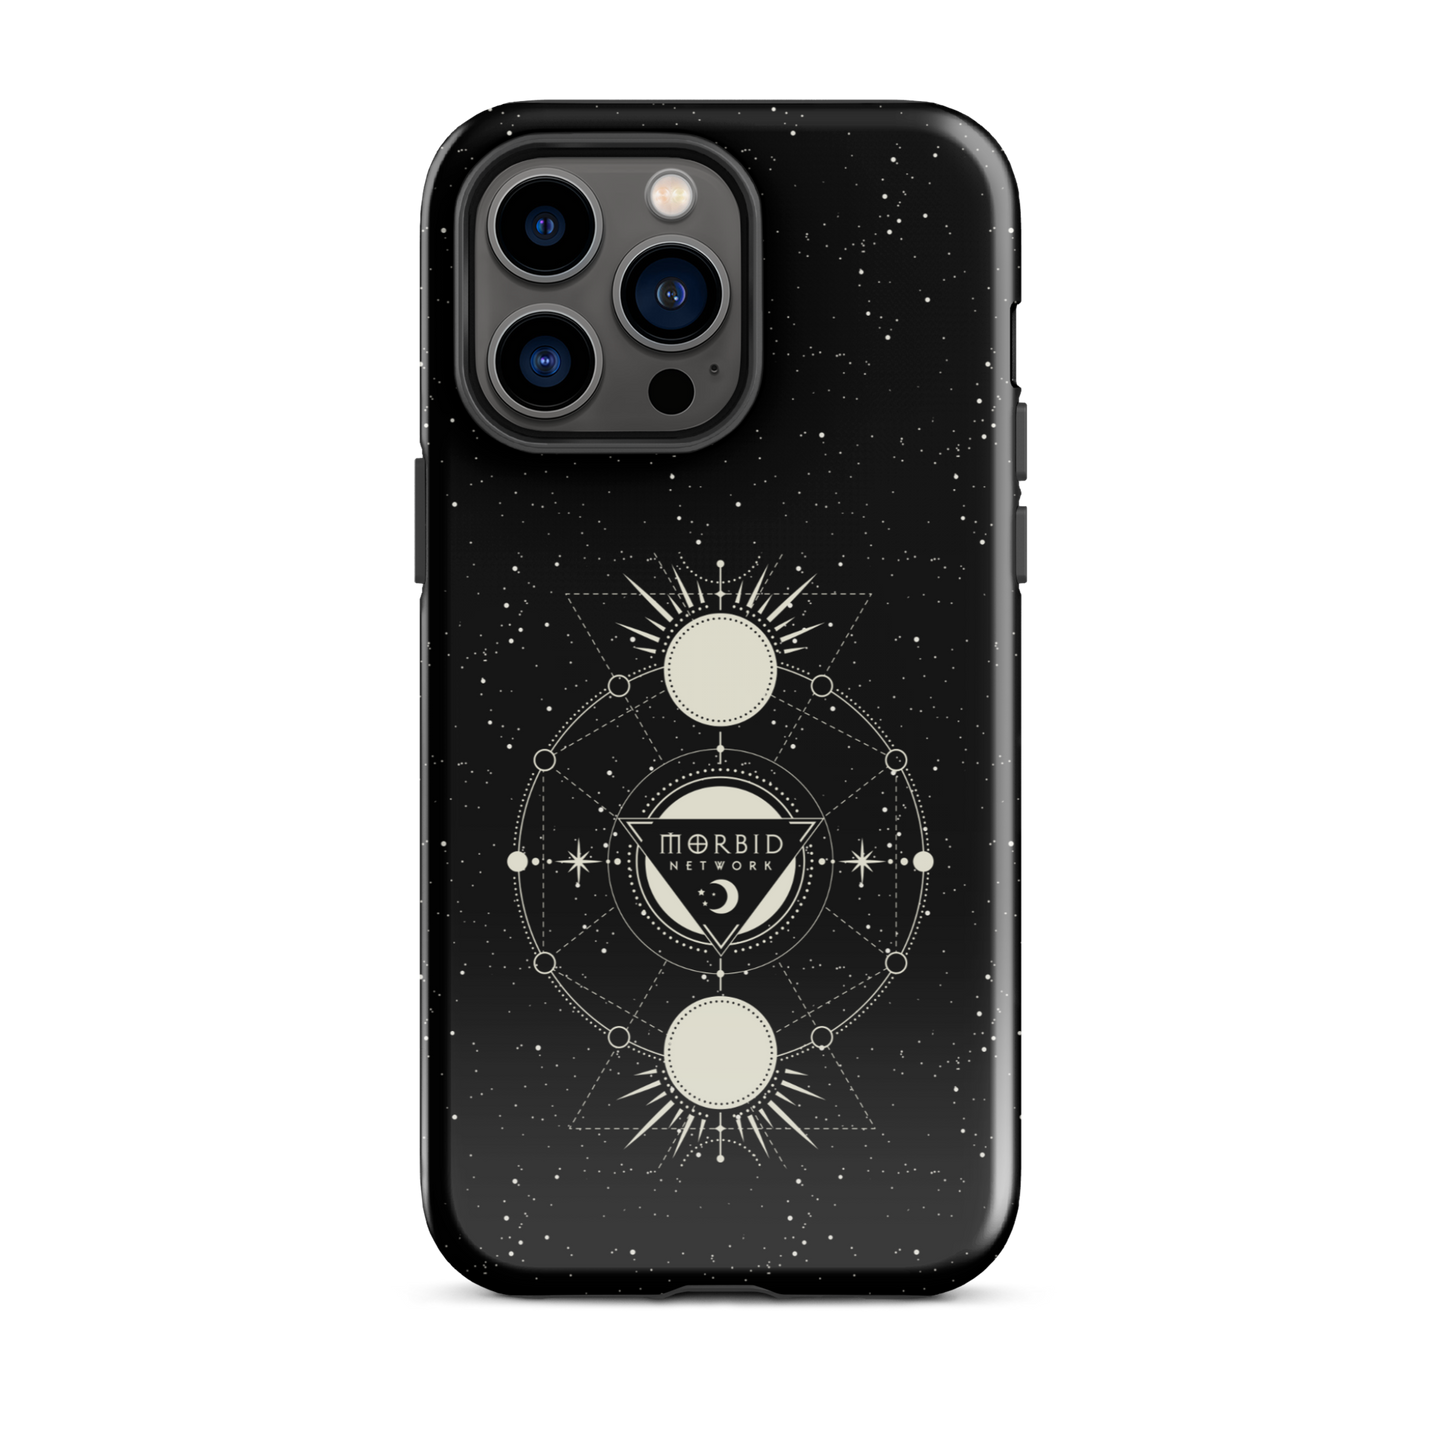 Morbid Celestial Design Tough Phone Case - iPhone